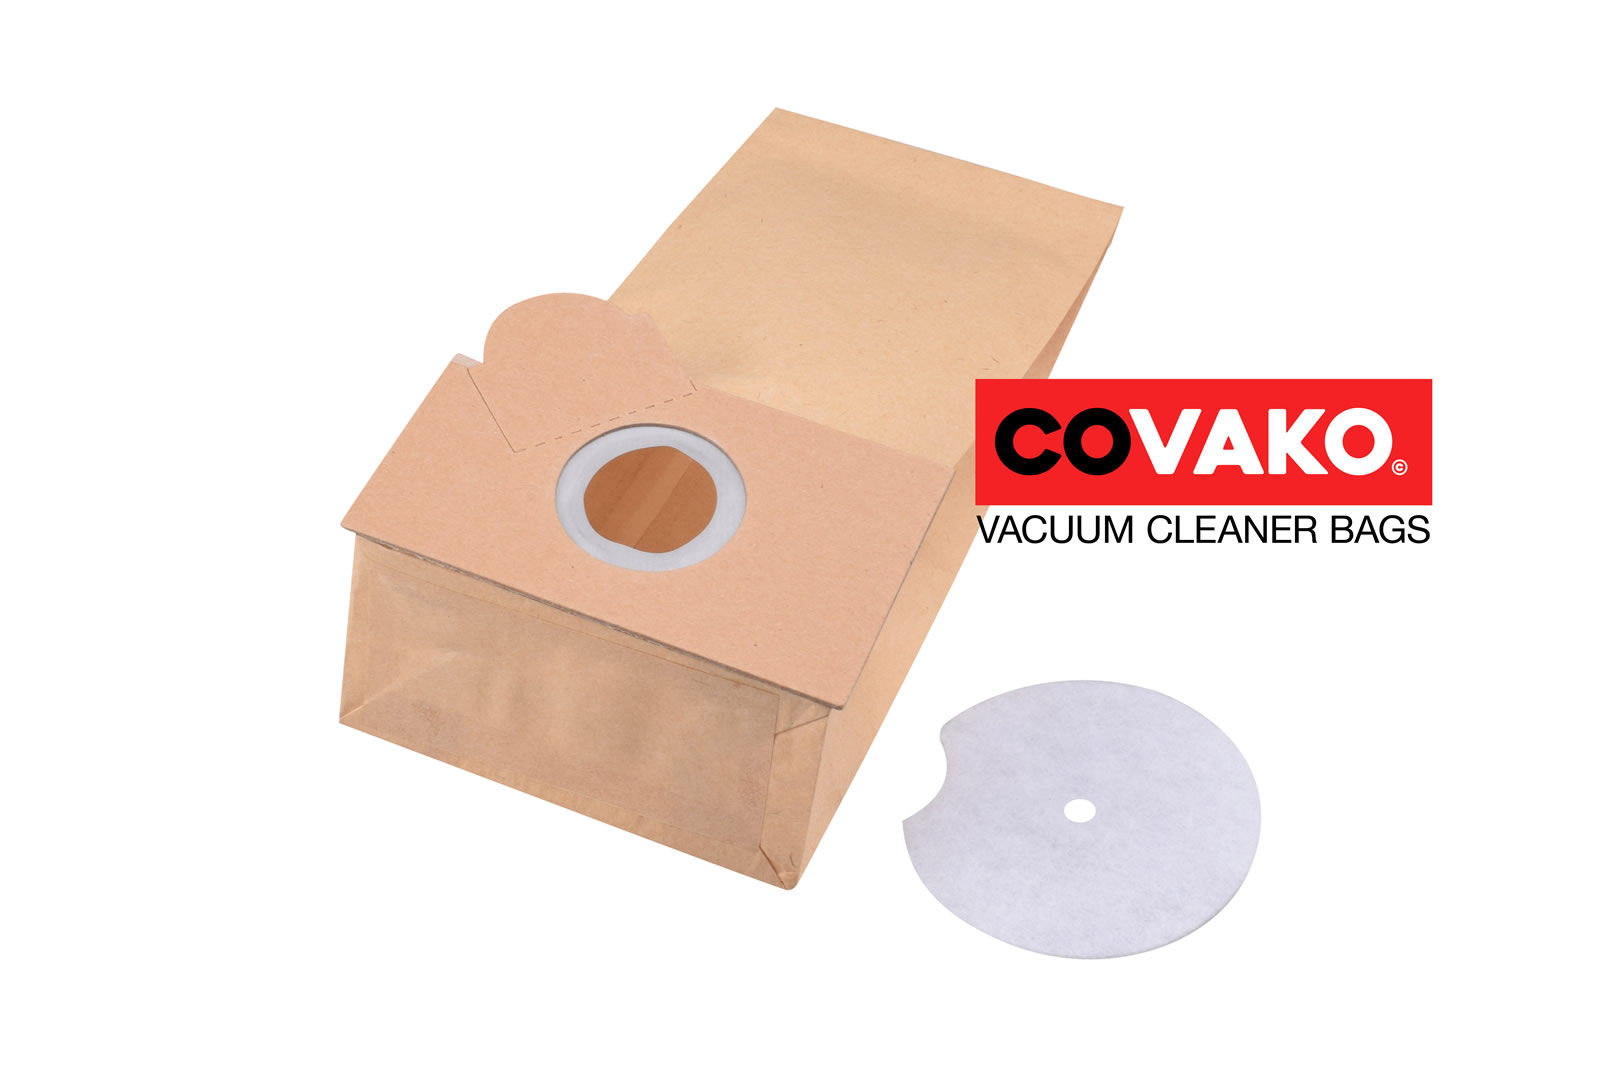 Fakir 1407 / Paper - Fakir vacuum cleaner bags